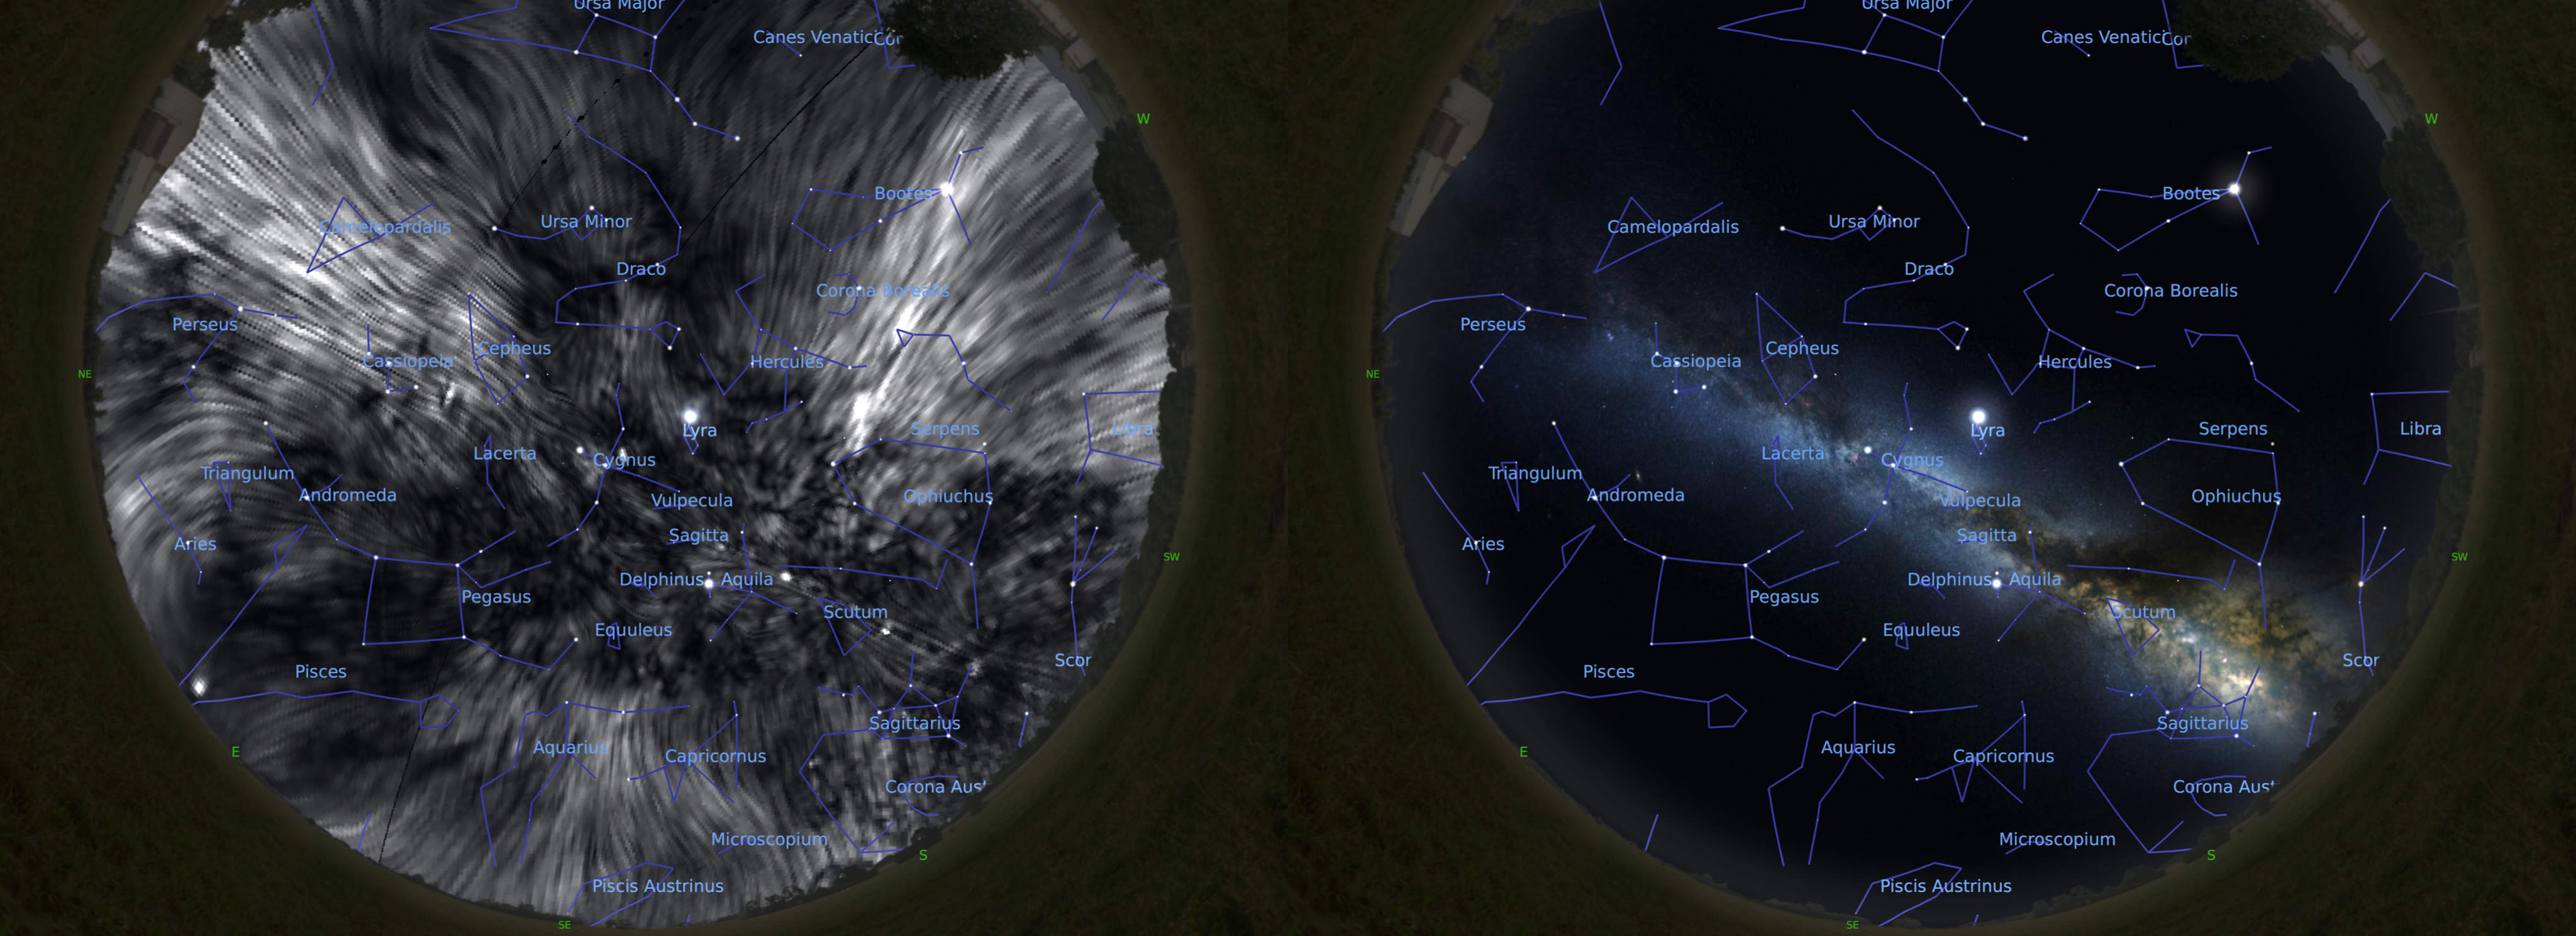 Vpravo noční obloha, vlevo stejný pohled s magnetickým tunelem, kdybychom viděli příslušné rádiové vlny. Kredit: Dominion Radio Astrophysical Observatory/Villa Elisa telescope/ESA/Planck Collaboration/Stellarium/J. West.